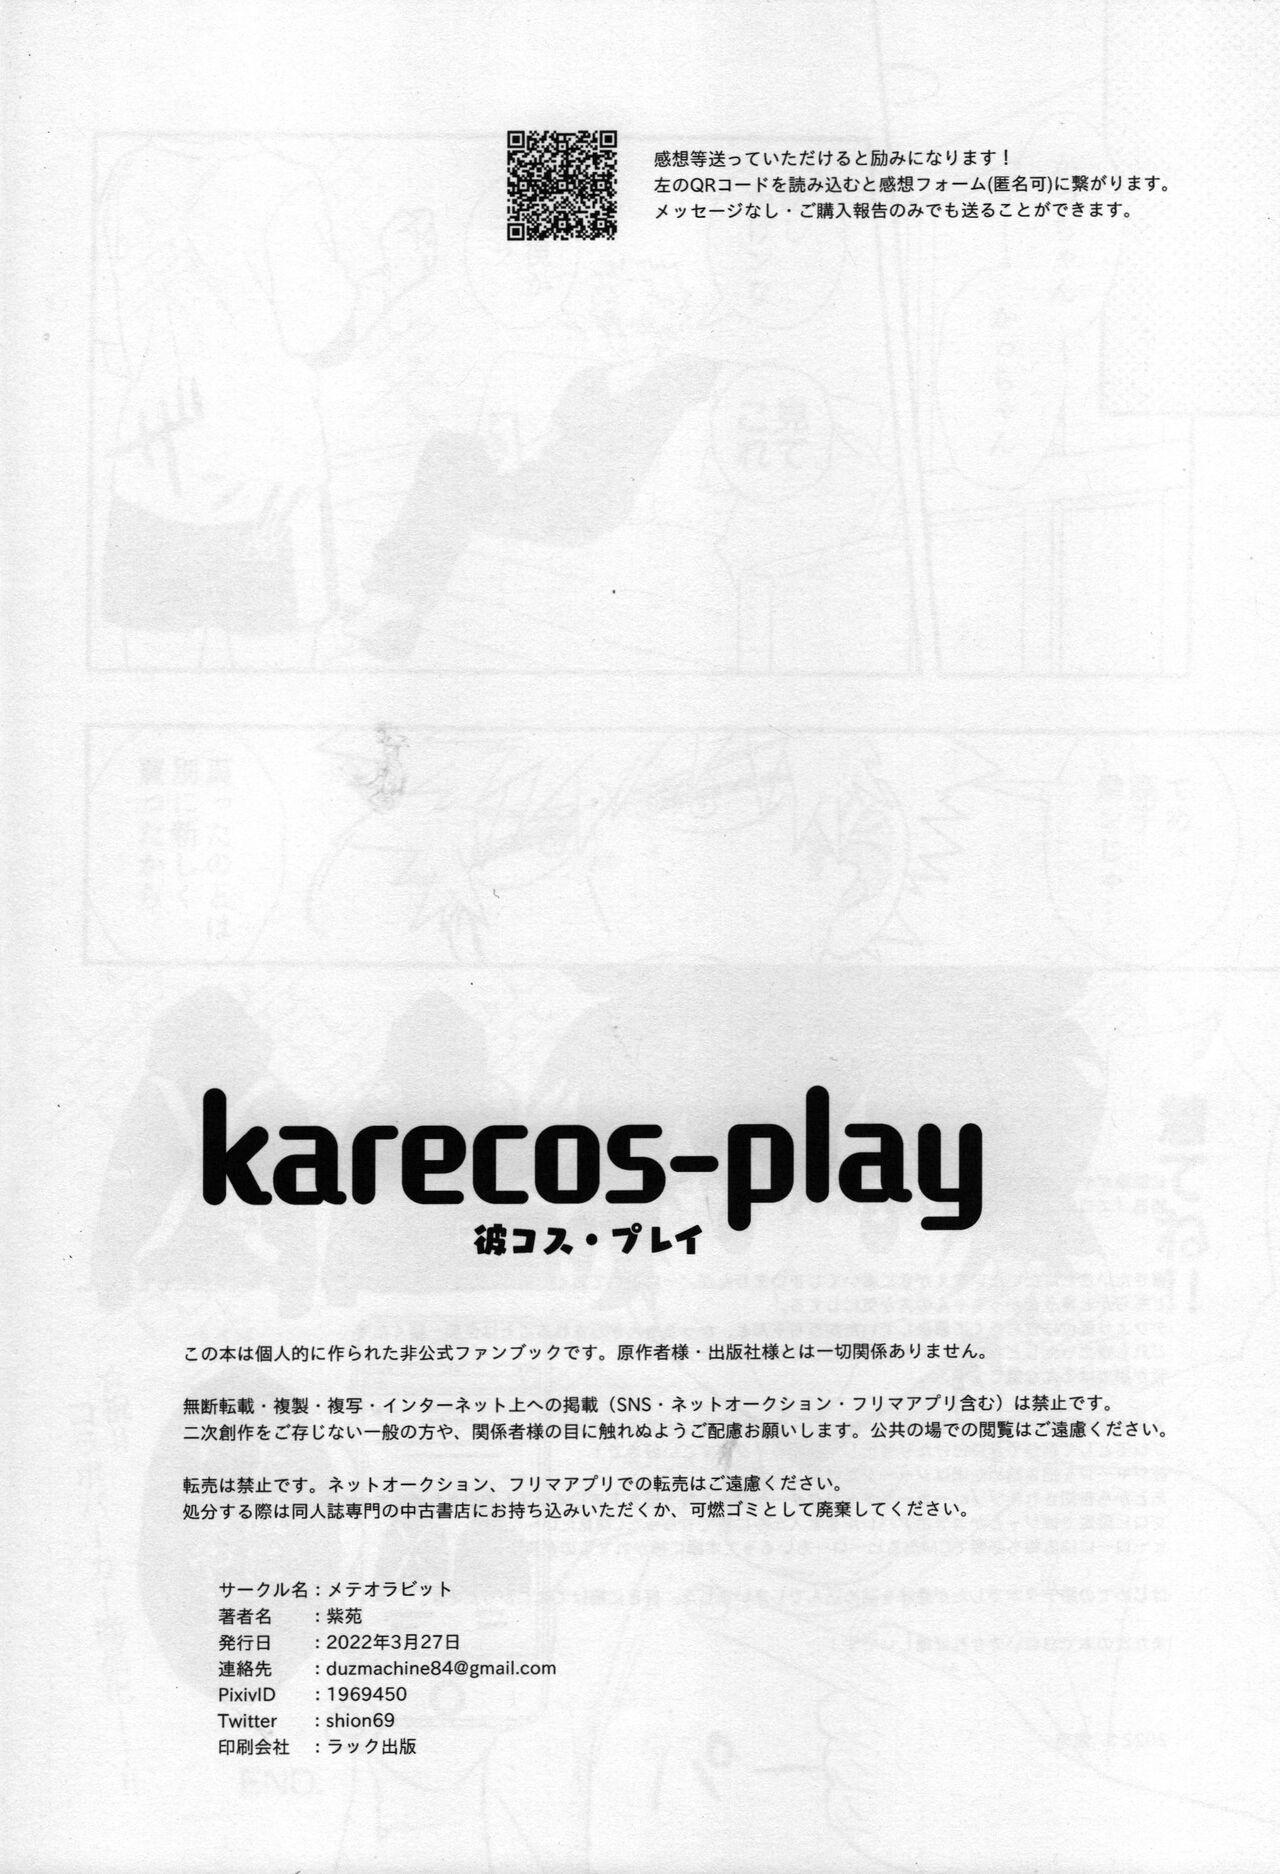 karecos-play 27